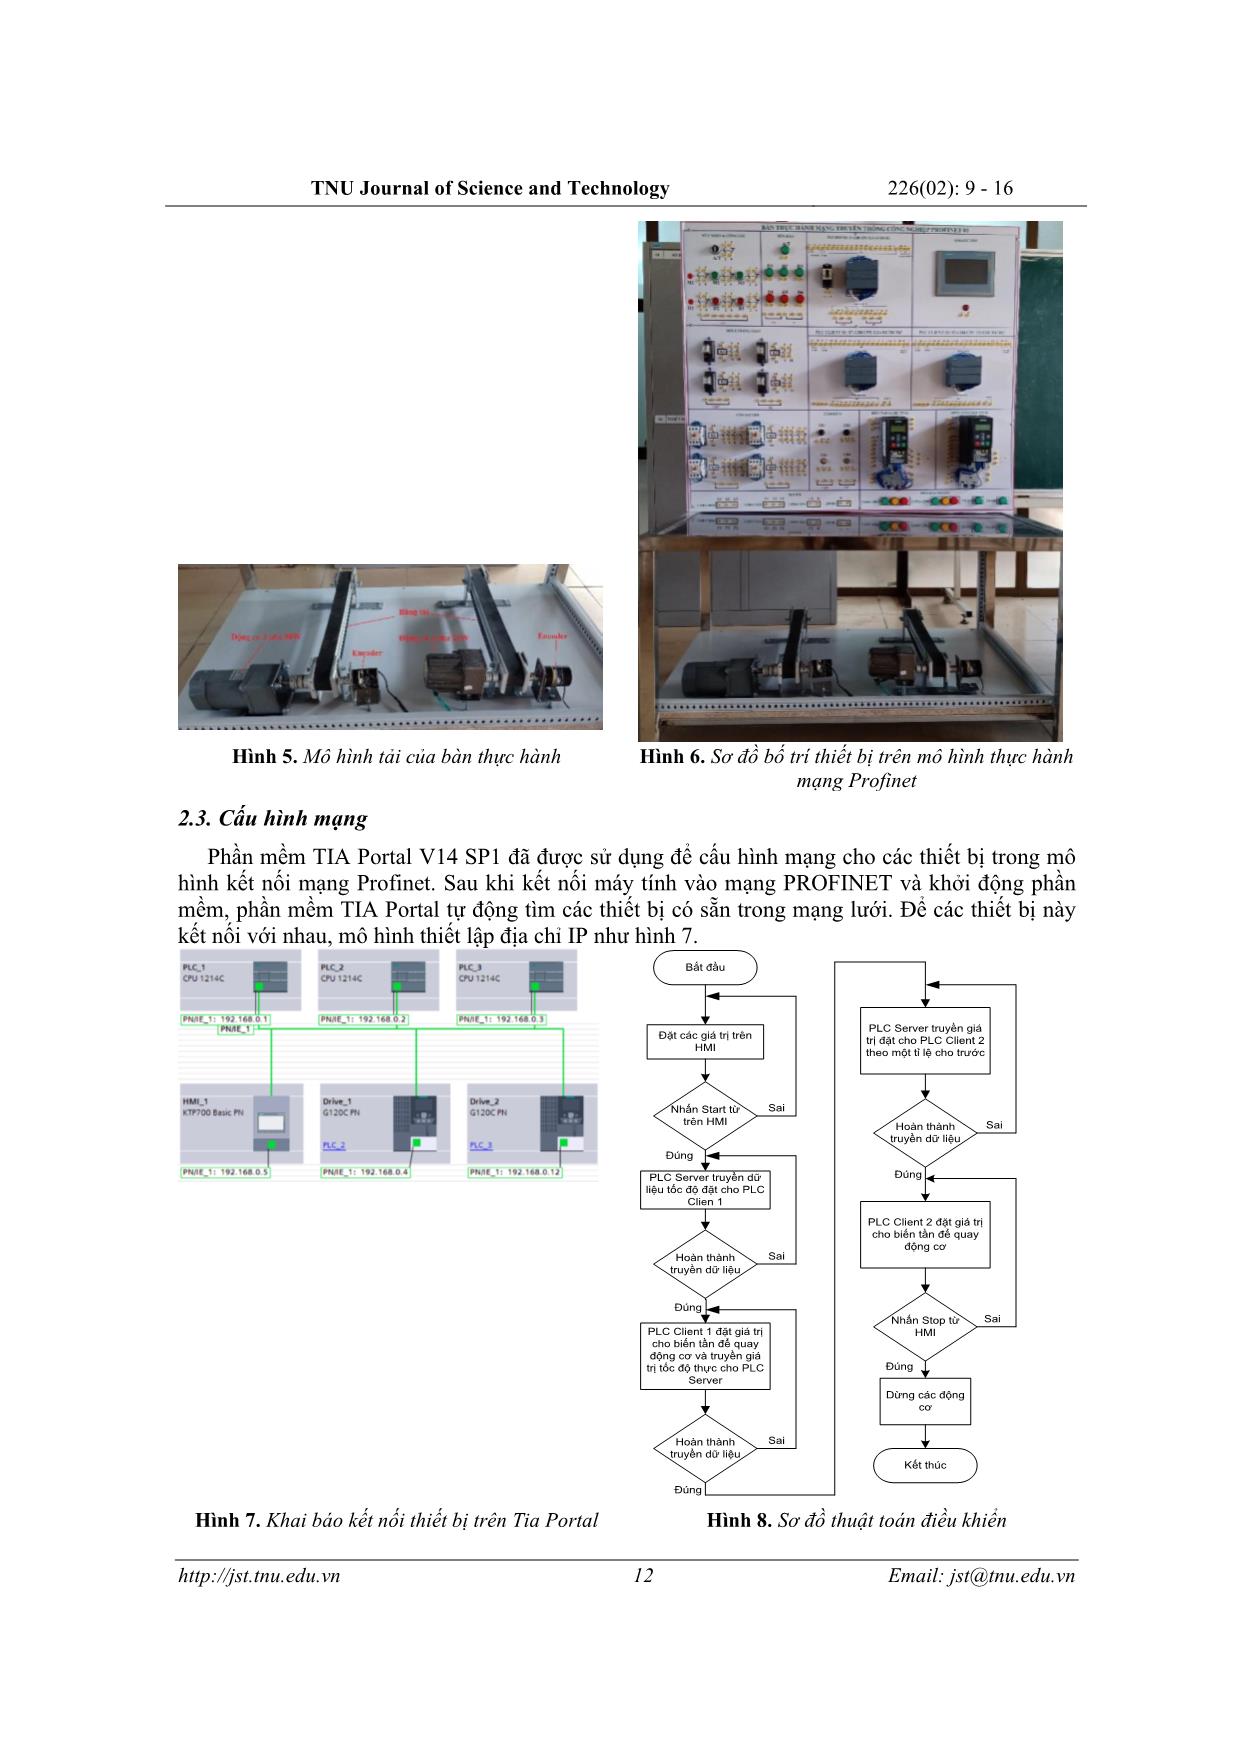 Nghiên cứu xây dựng mô hình thực hành mạng truyền thông Profinet cho mục đích giáo dục trang 4